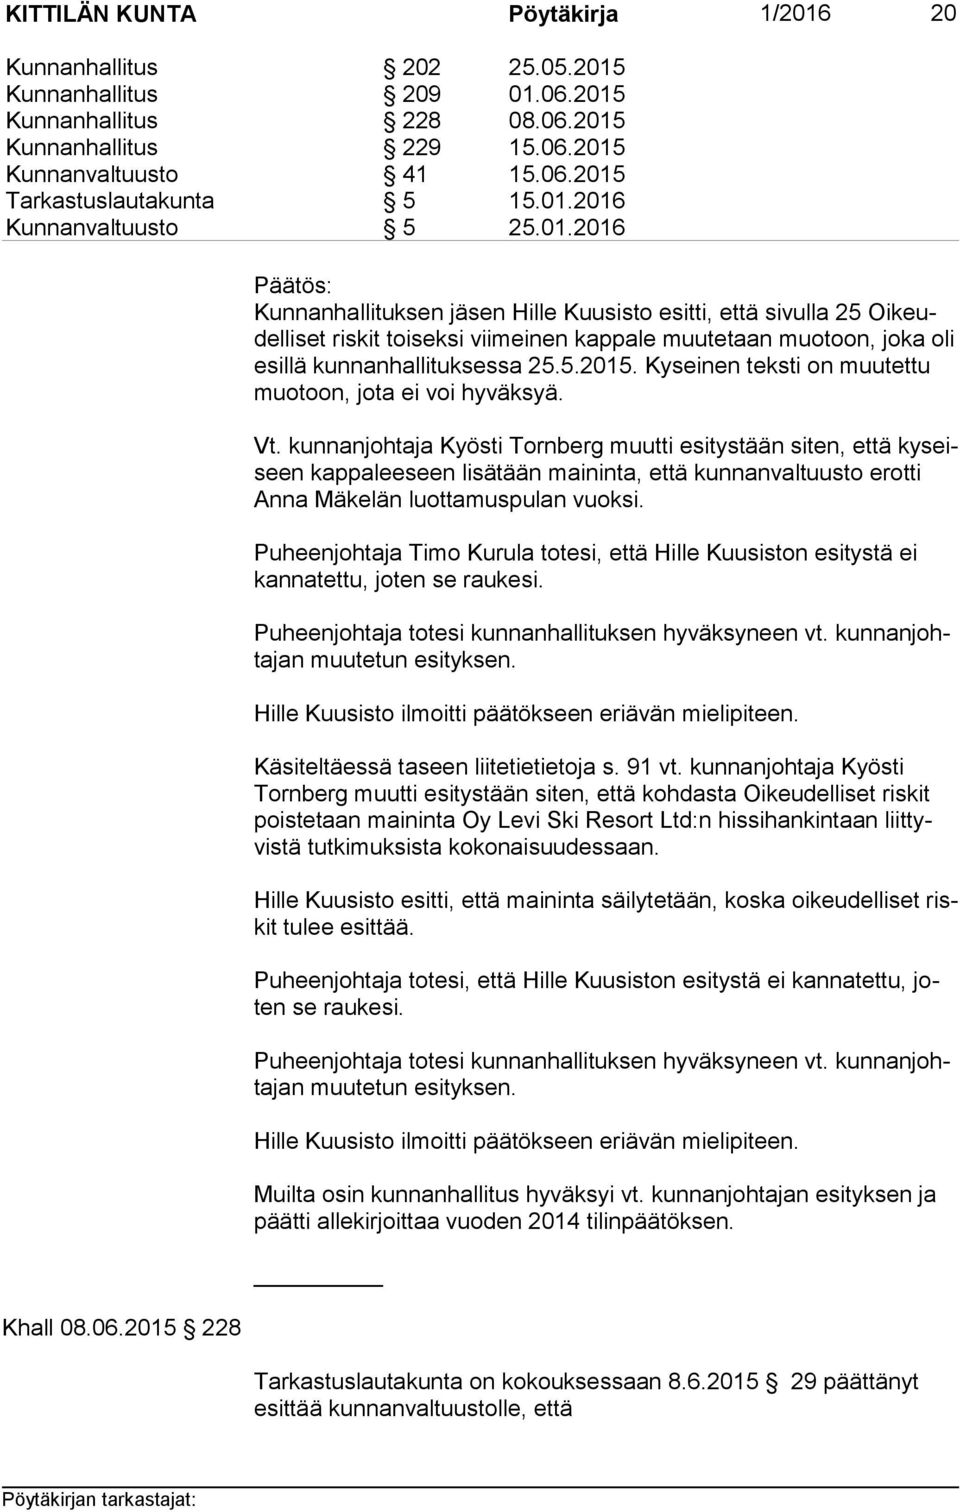 2015 228 Kunnanhallituksen jäsen Hille Kuusisto esitti, että sivulla 25 Oi keudel li set riskit toiseksi viimeinen kappale muutetaan muotoon, joka oli esil lä kunnanhallituksessa 25.5.2015. Kyseinen teksti on muutettu muo toon, jota ei voi hyväksyä.